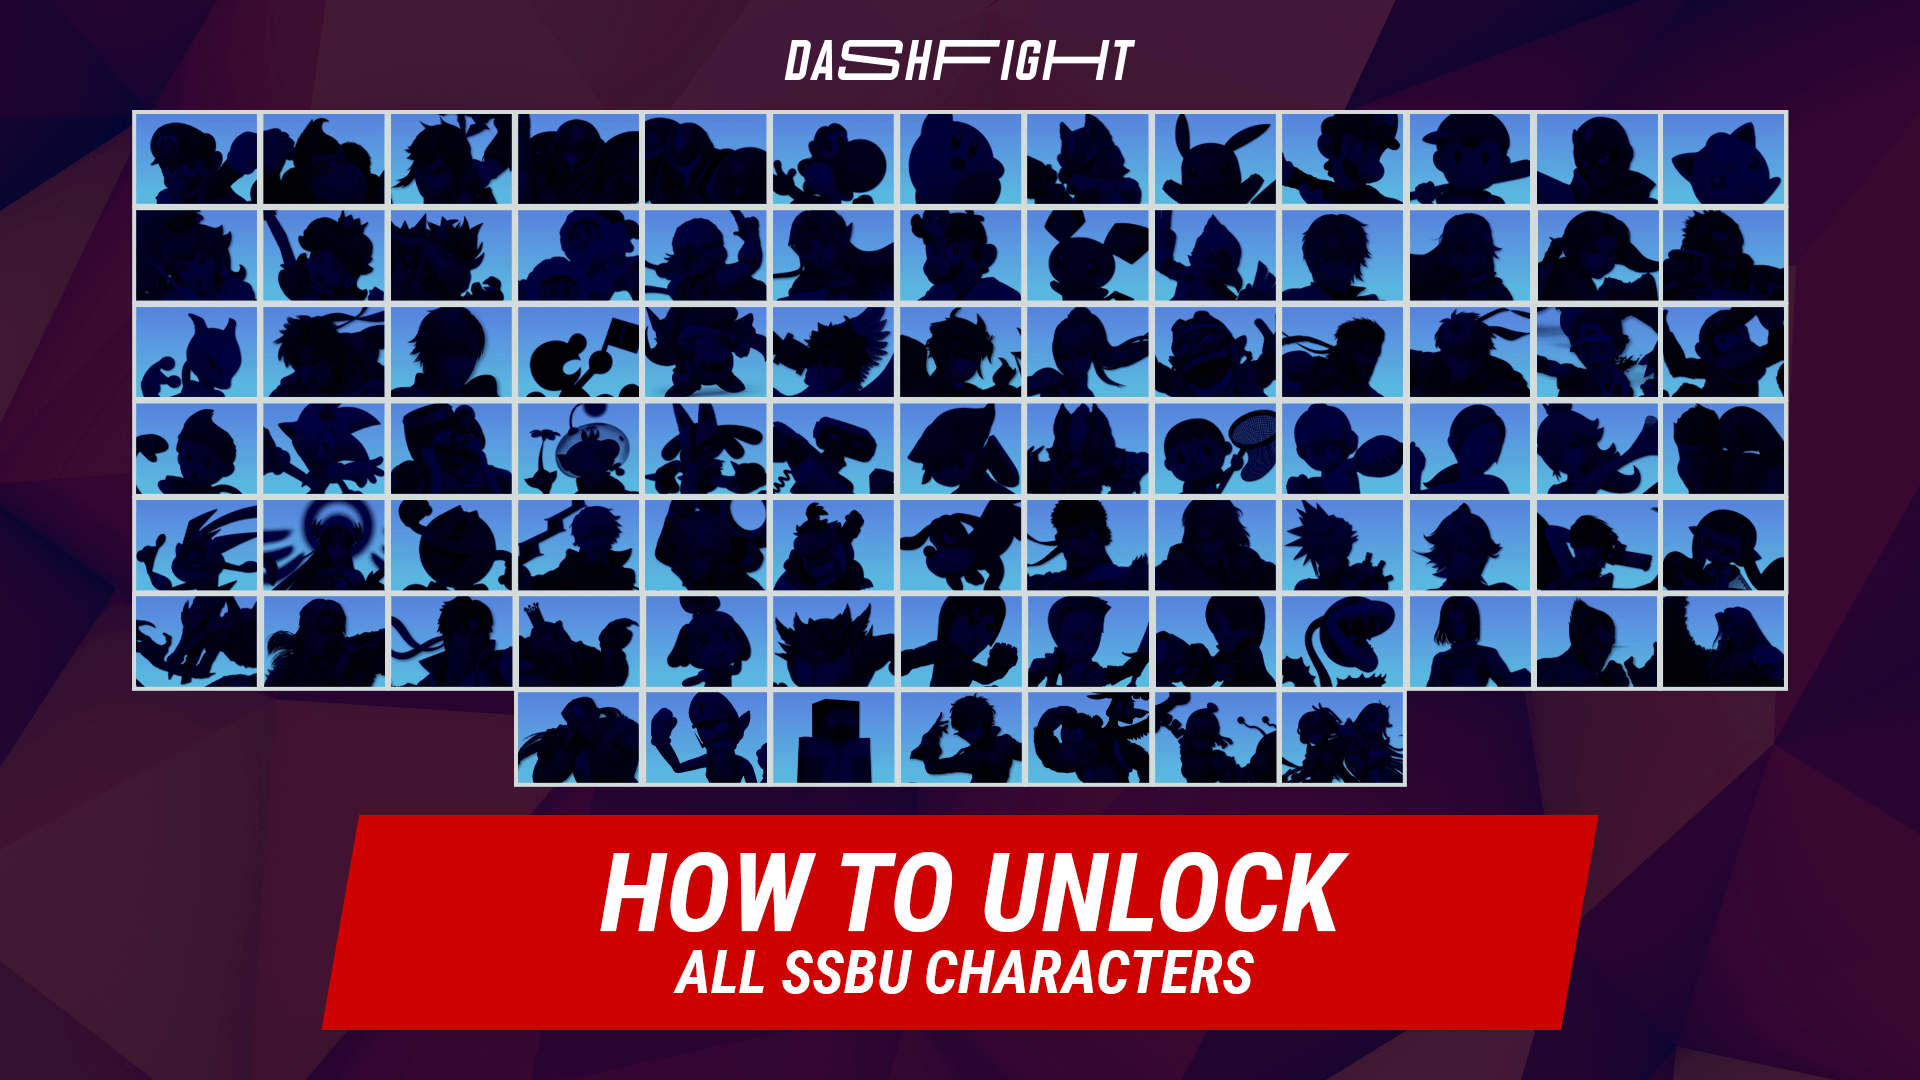 Super Smash Bros Ultimate: Character unlock guide